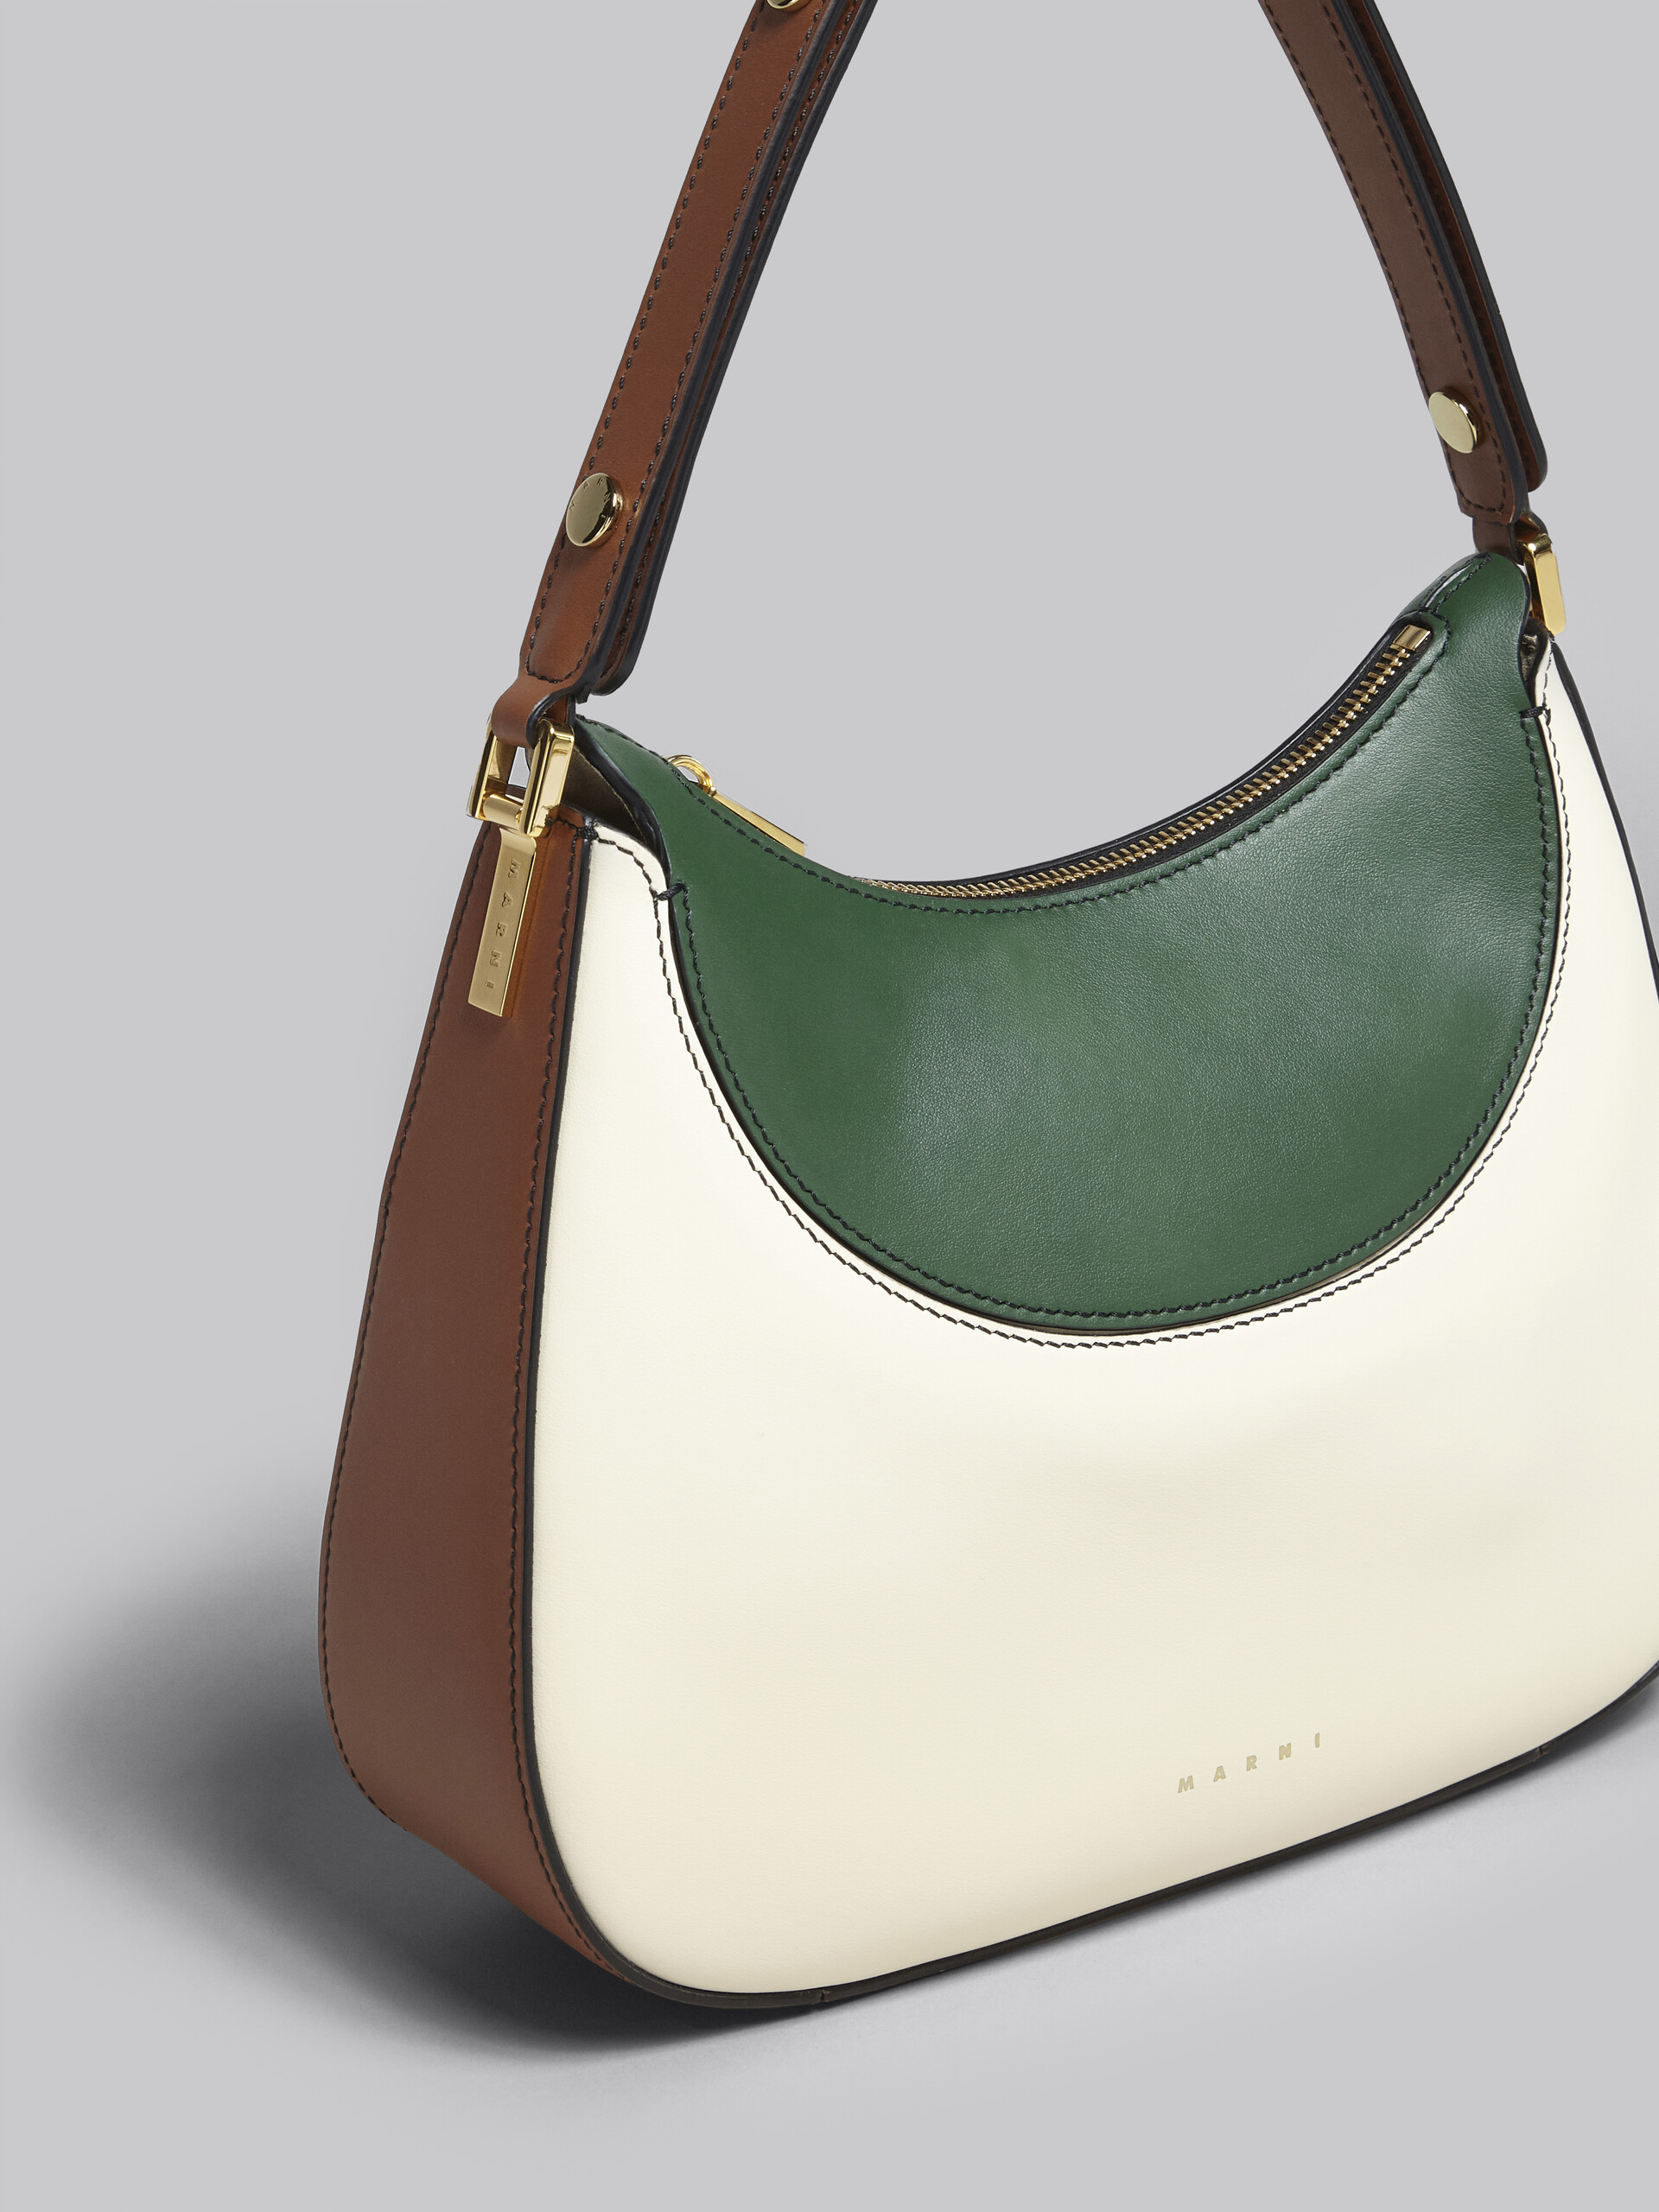 Petit sac Milano en cuir blanc, marron et vert - Sacs à main - Image 5